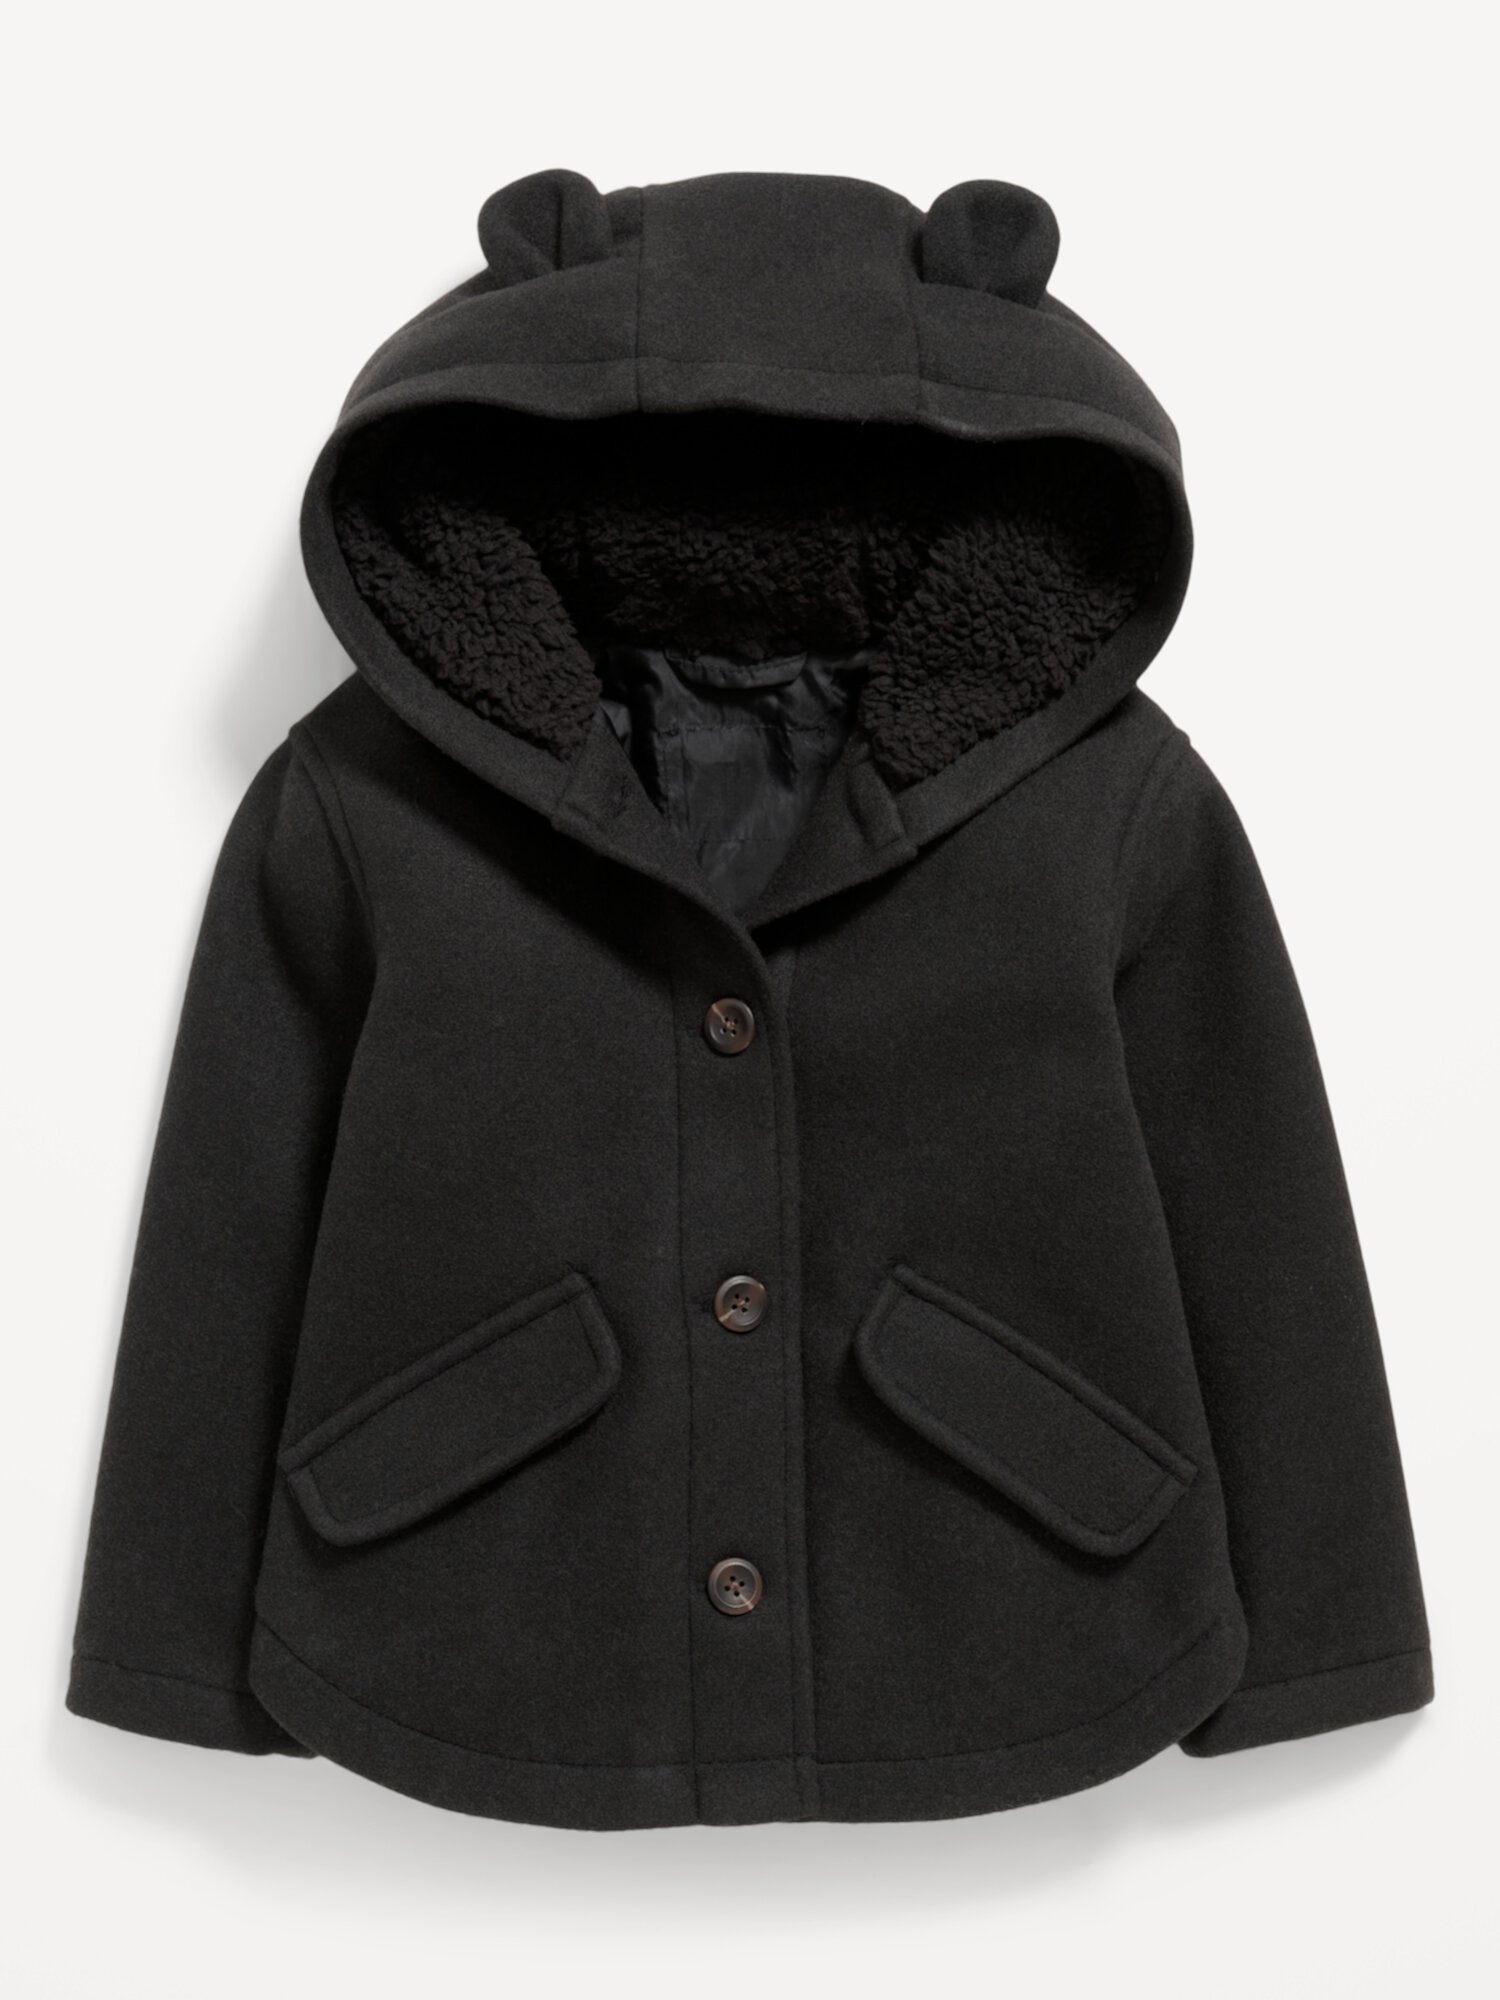 Однотонное пальто с капюшоном на пуговицах спереди для девочек-малышей Old Navy